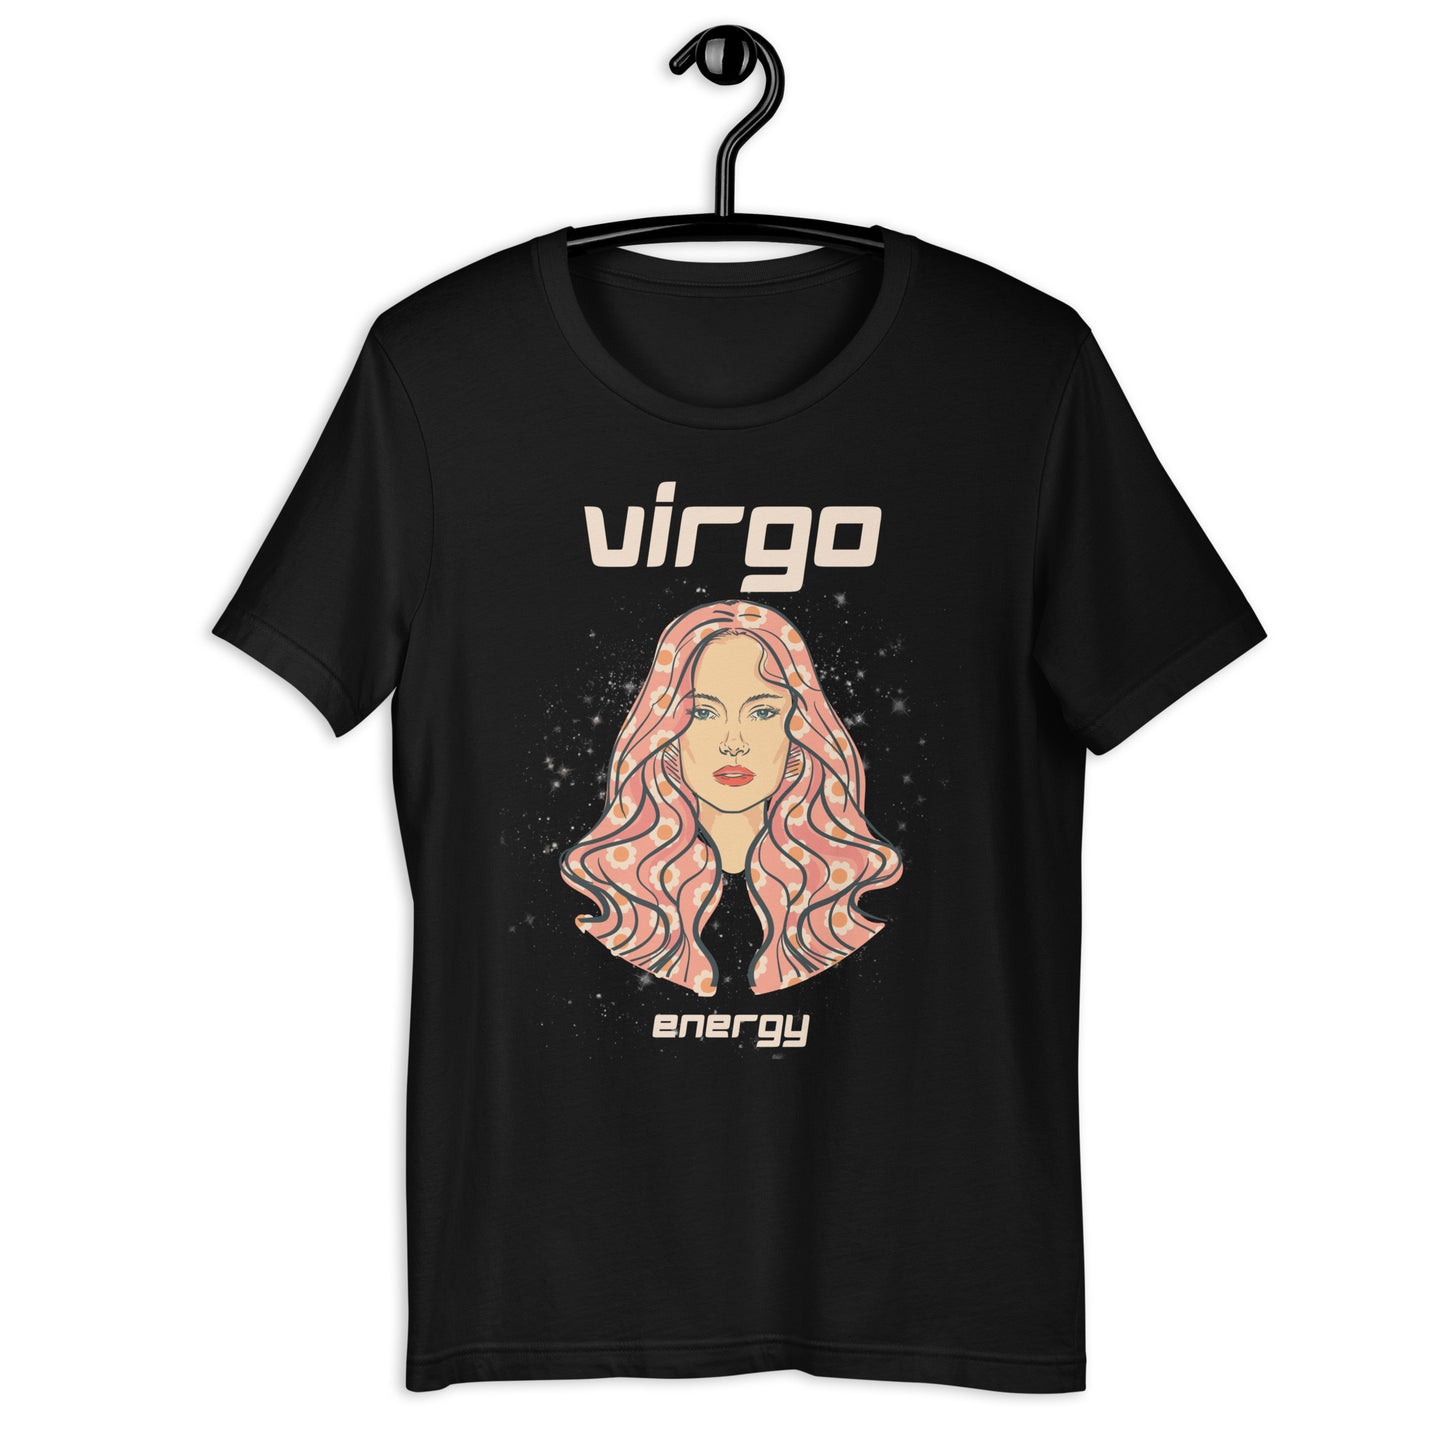 Virgo Energy- Tee